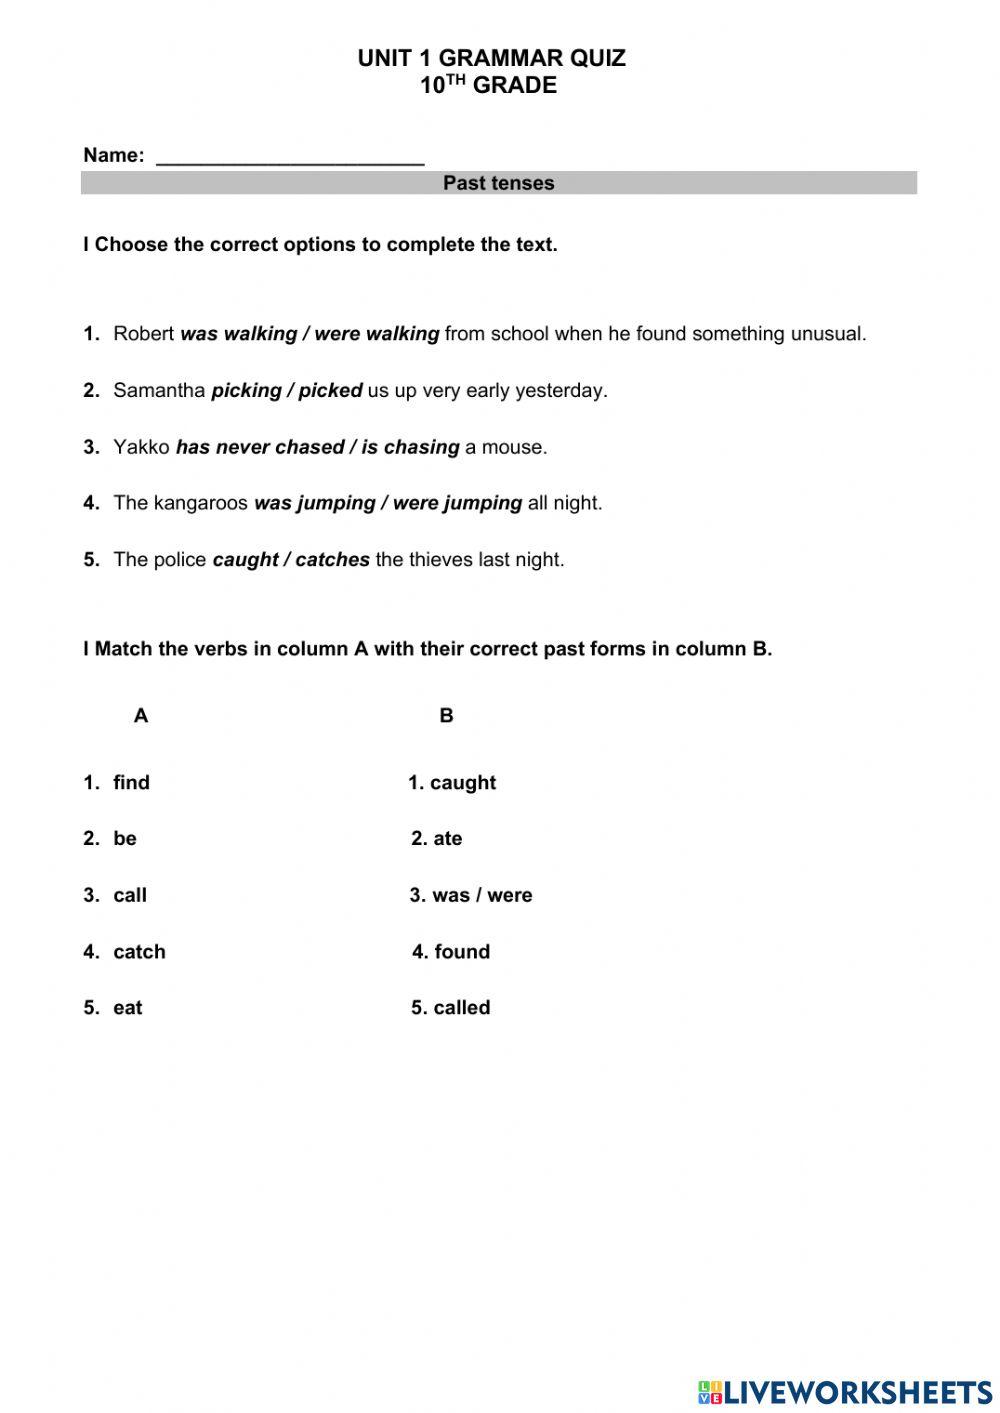 10th grade - past tenses quiz version